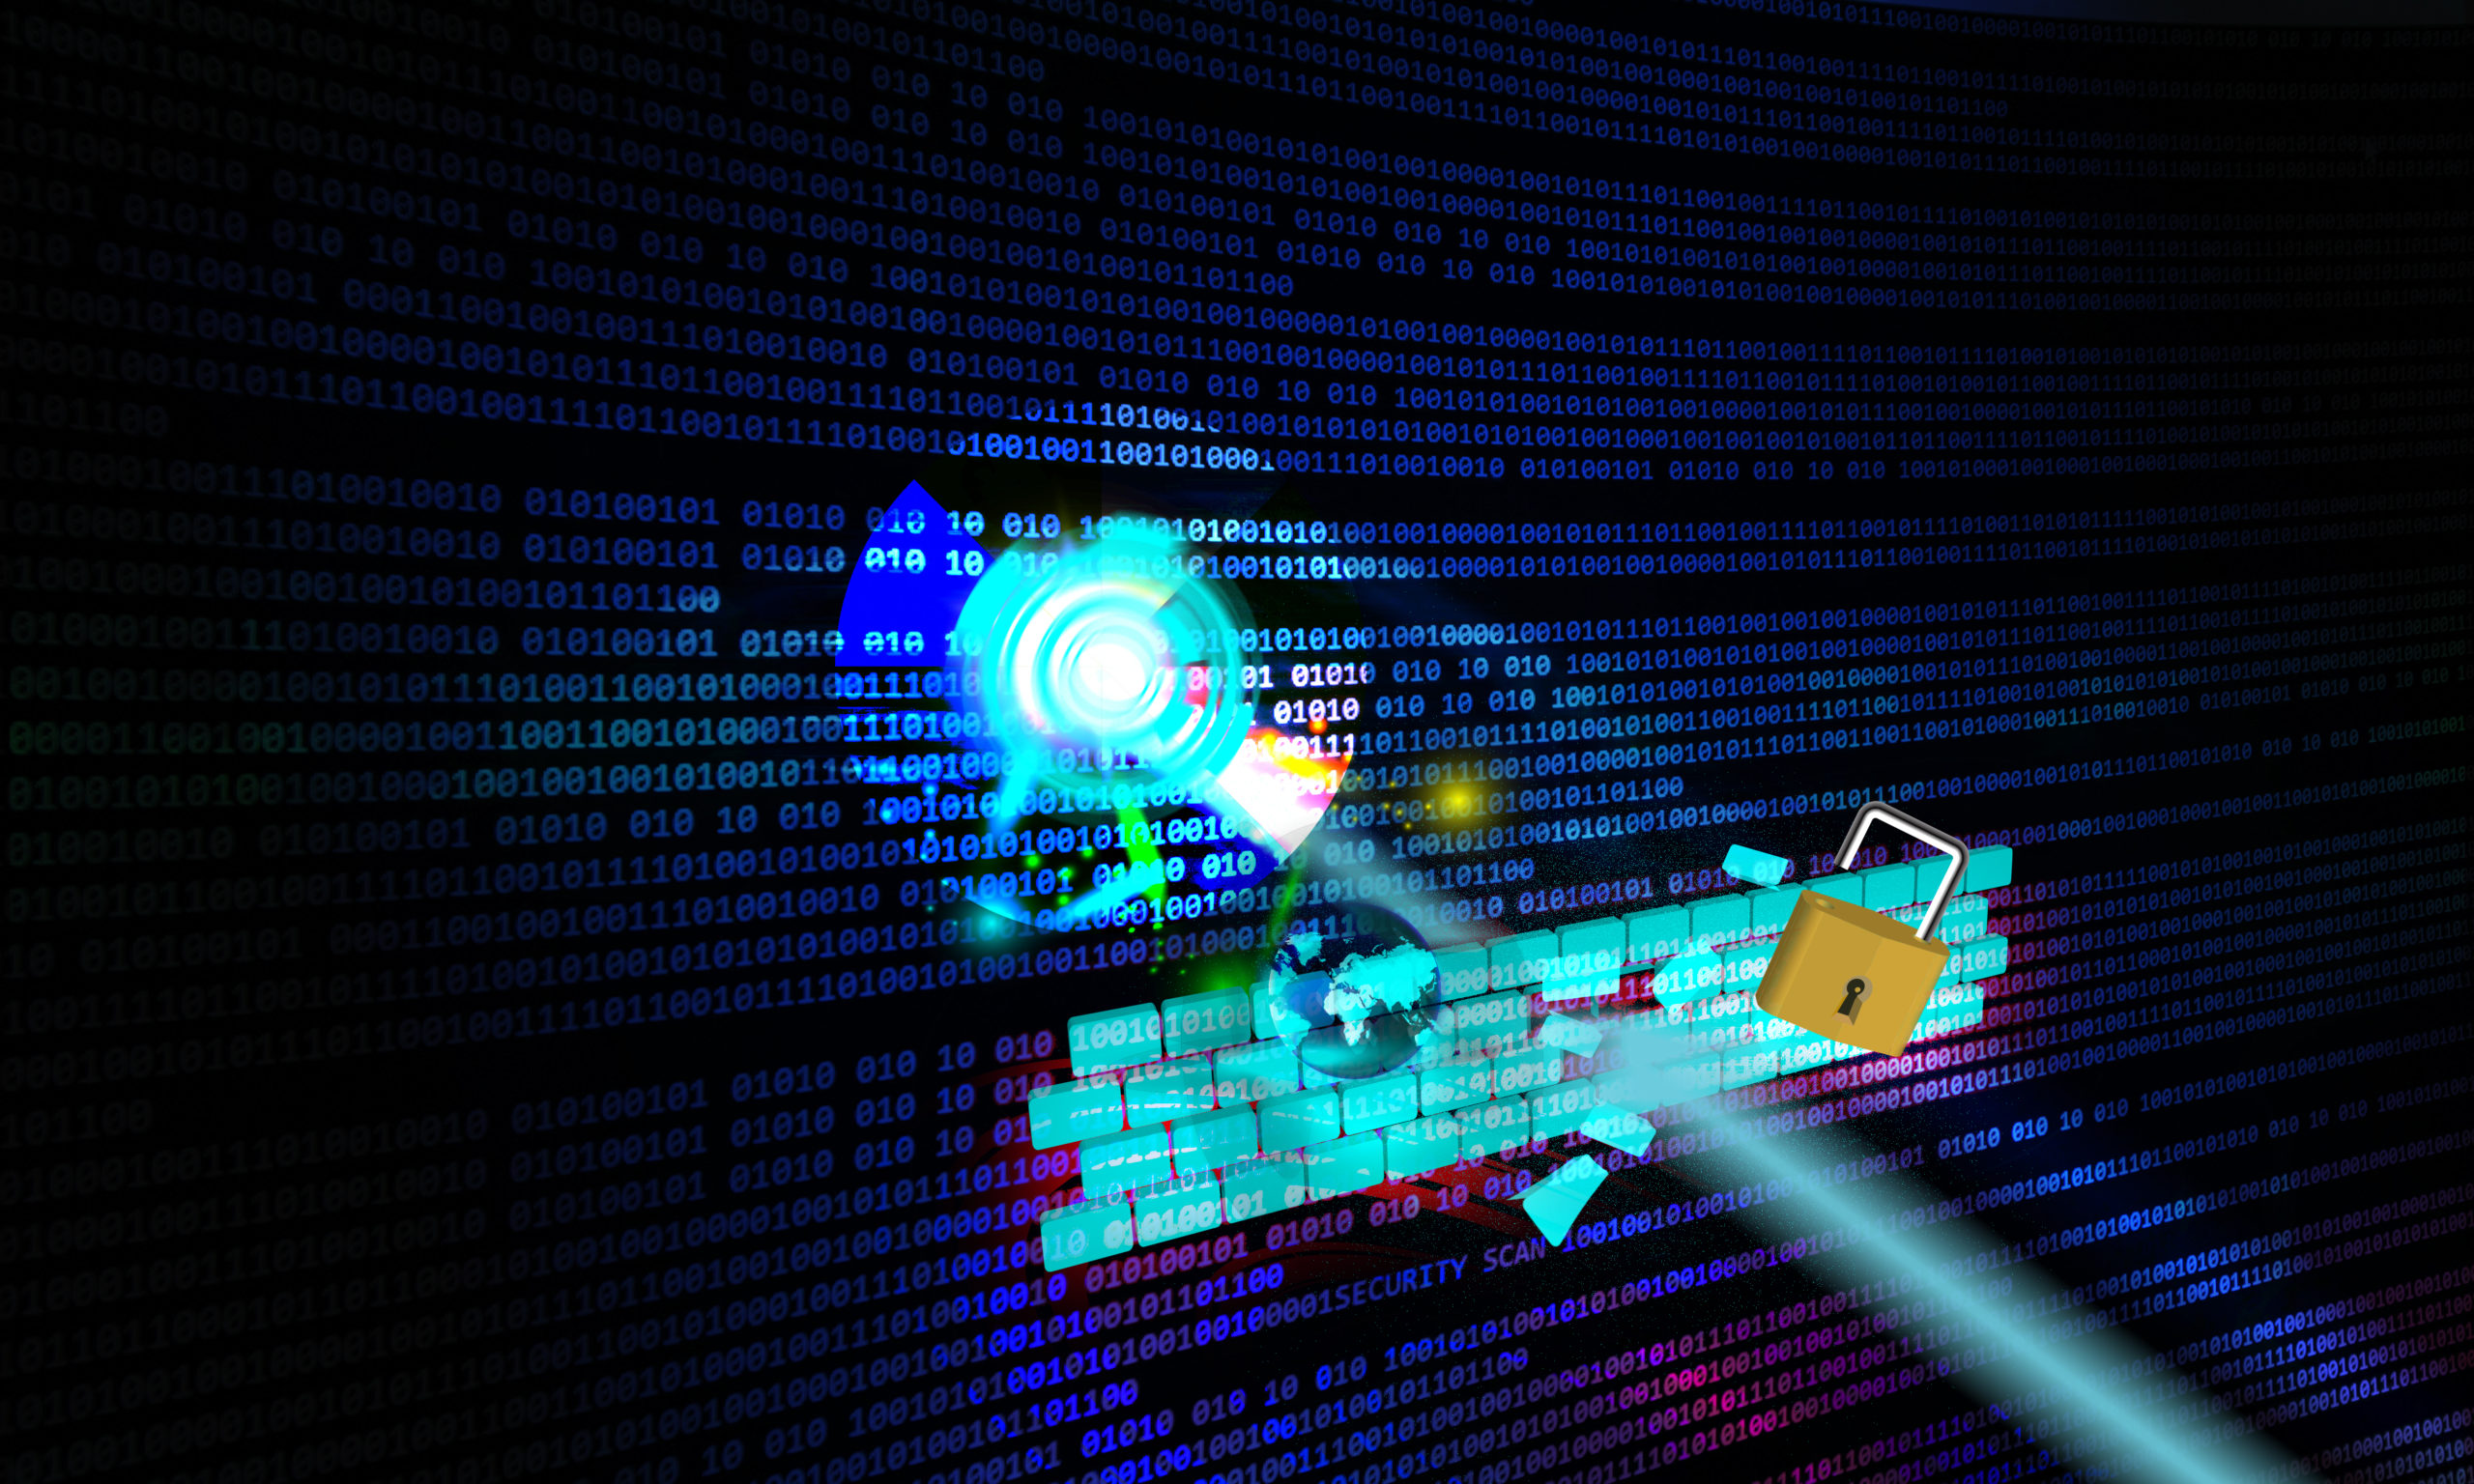 Methods to find cybersecurity vulnerabilities